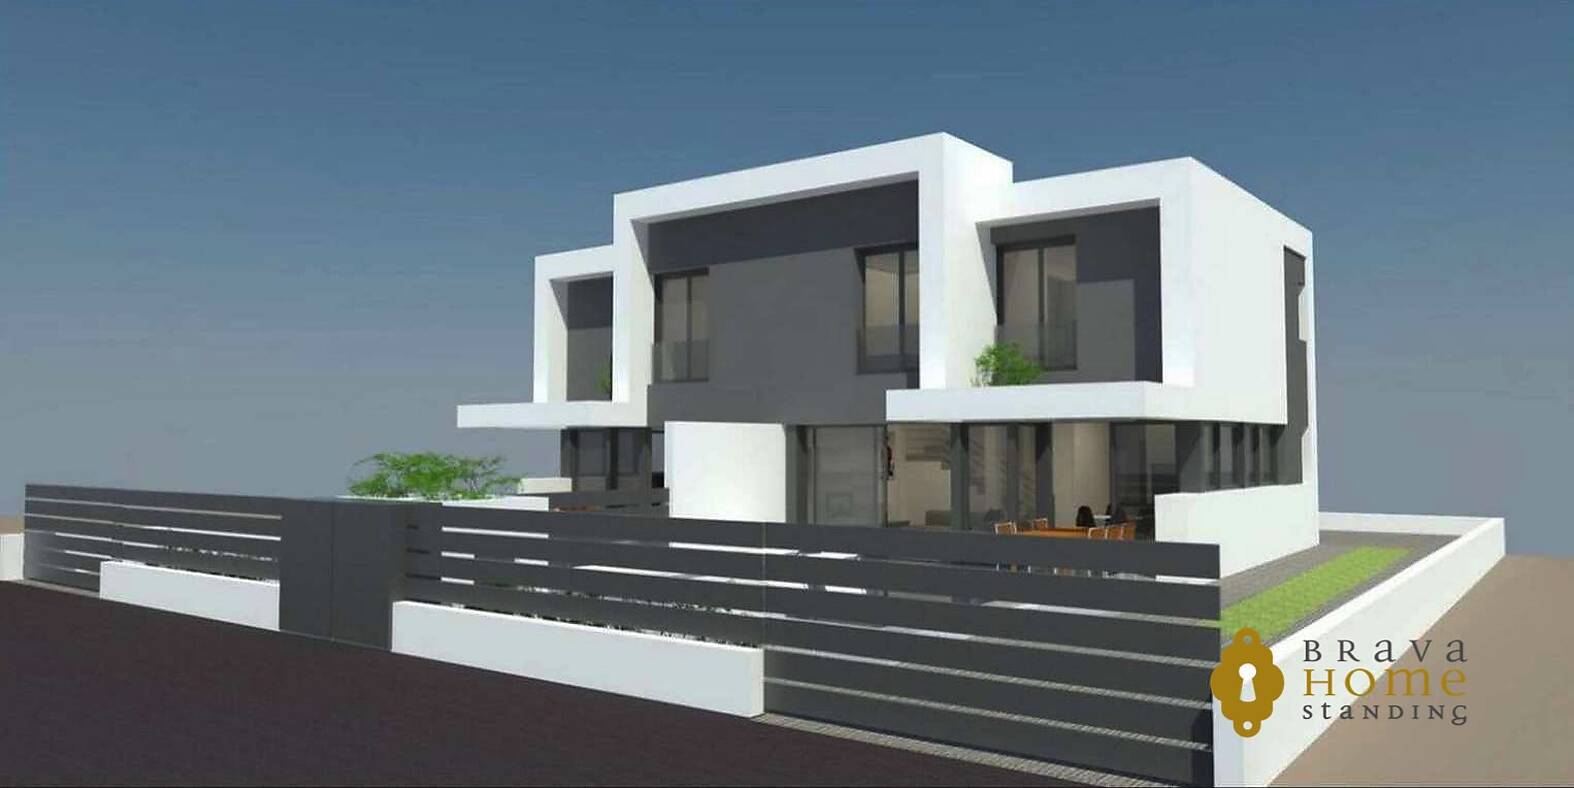 Casa de estilo moderno en construcción en venta Empuriabrava